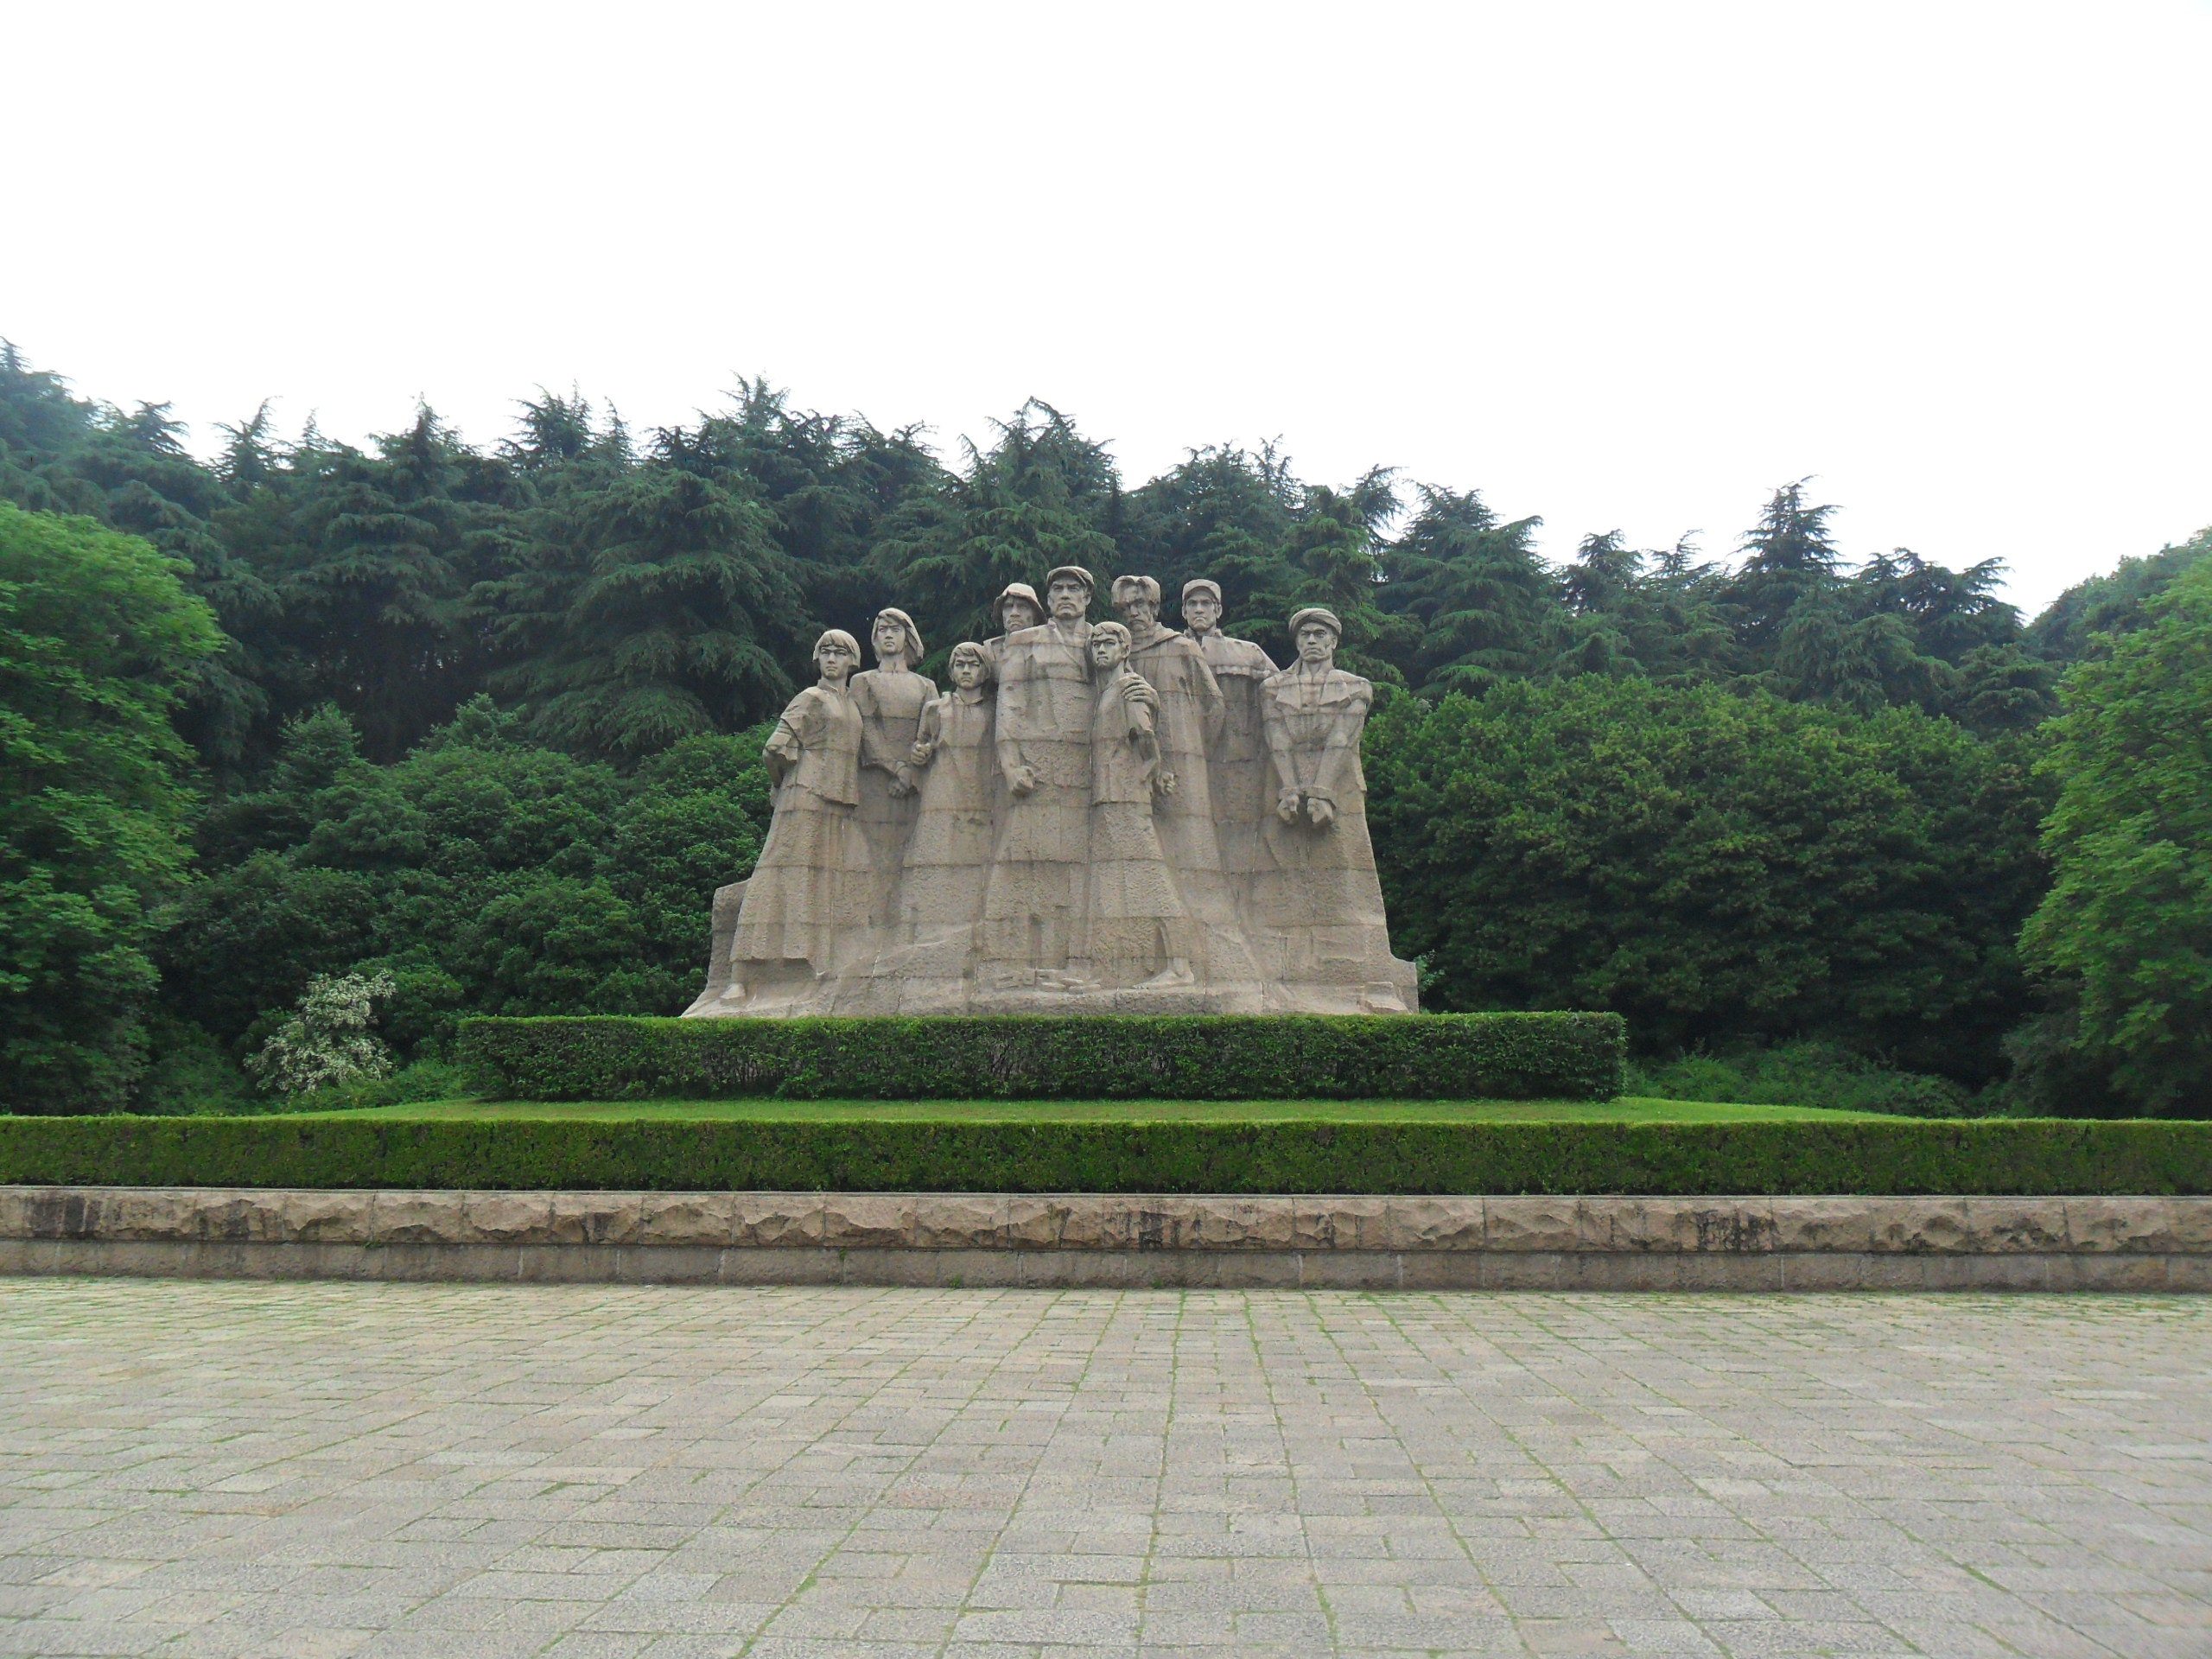 【携程攻略】南京雨花台烈士陵园景点,雨花台烈士陵园，在雨花台公园里。这座雕塑非常有名气，小学课本就有…